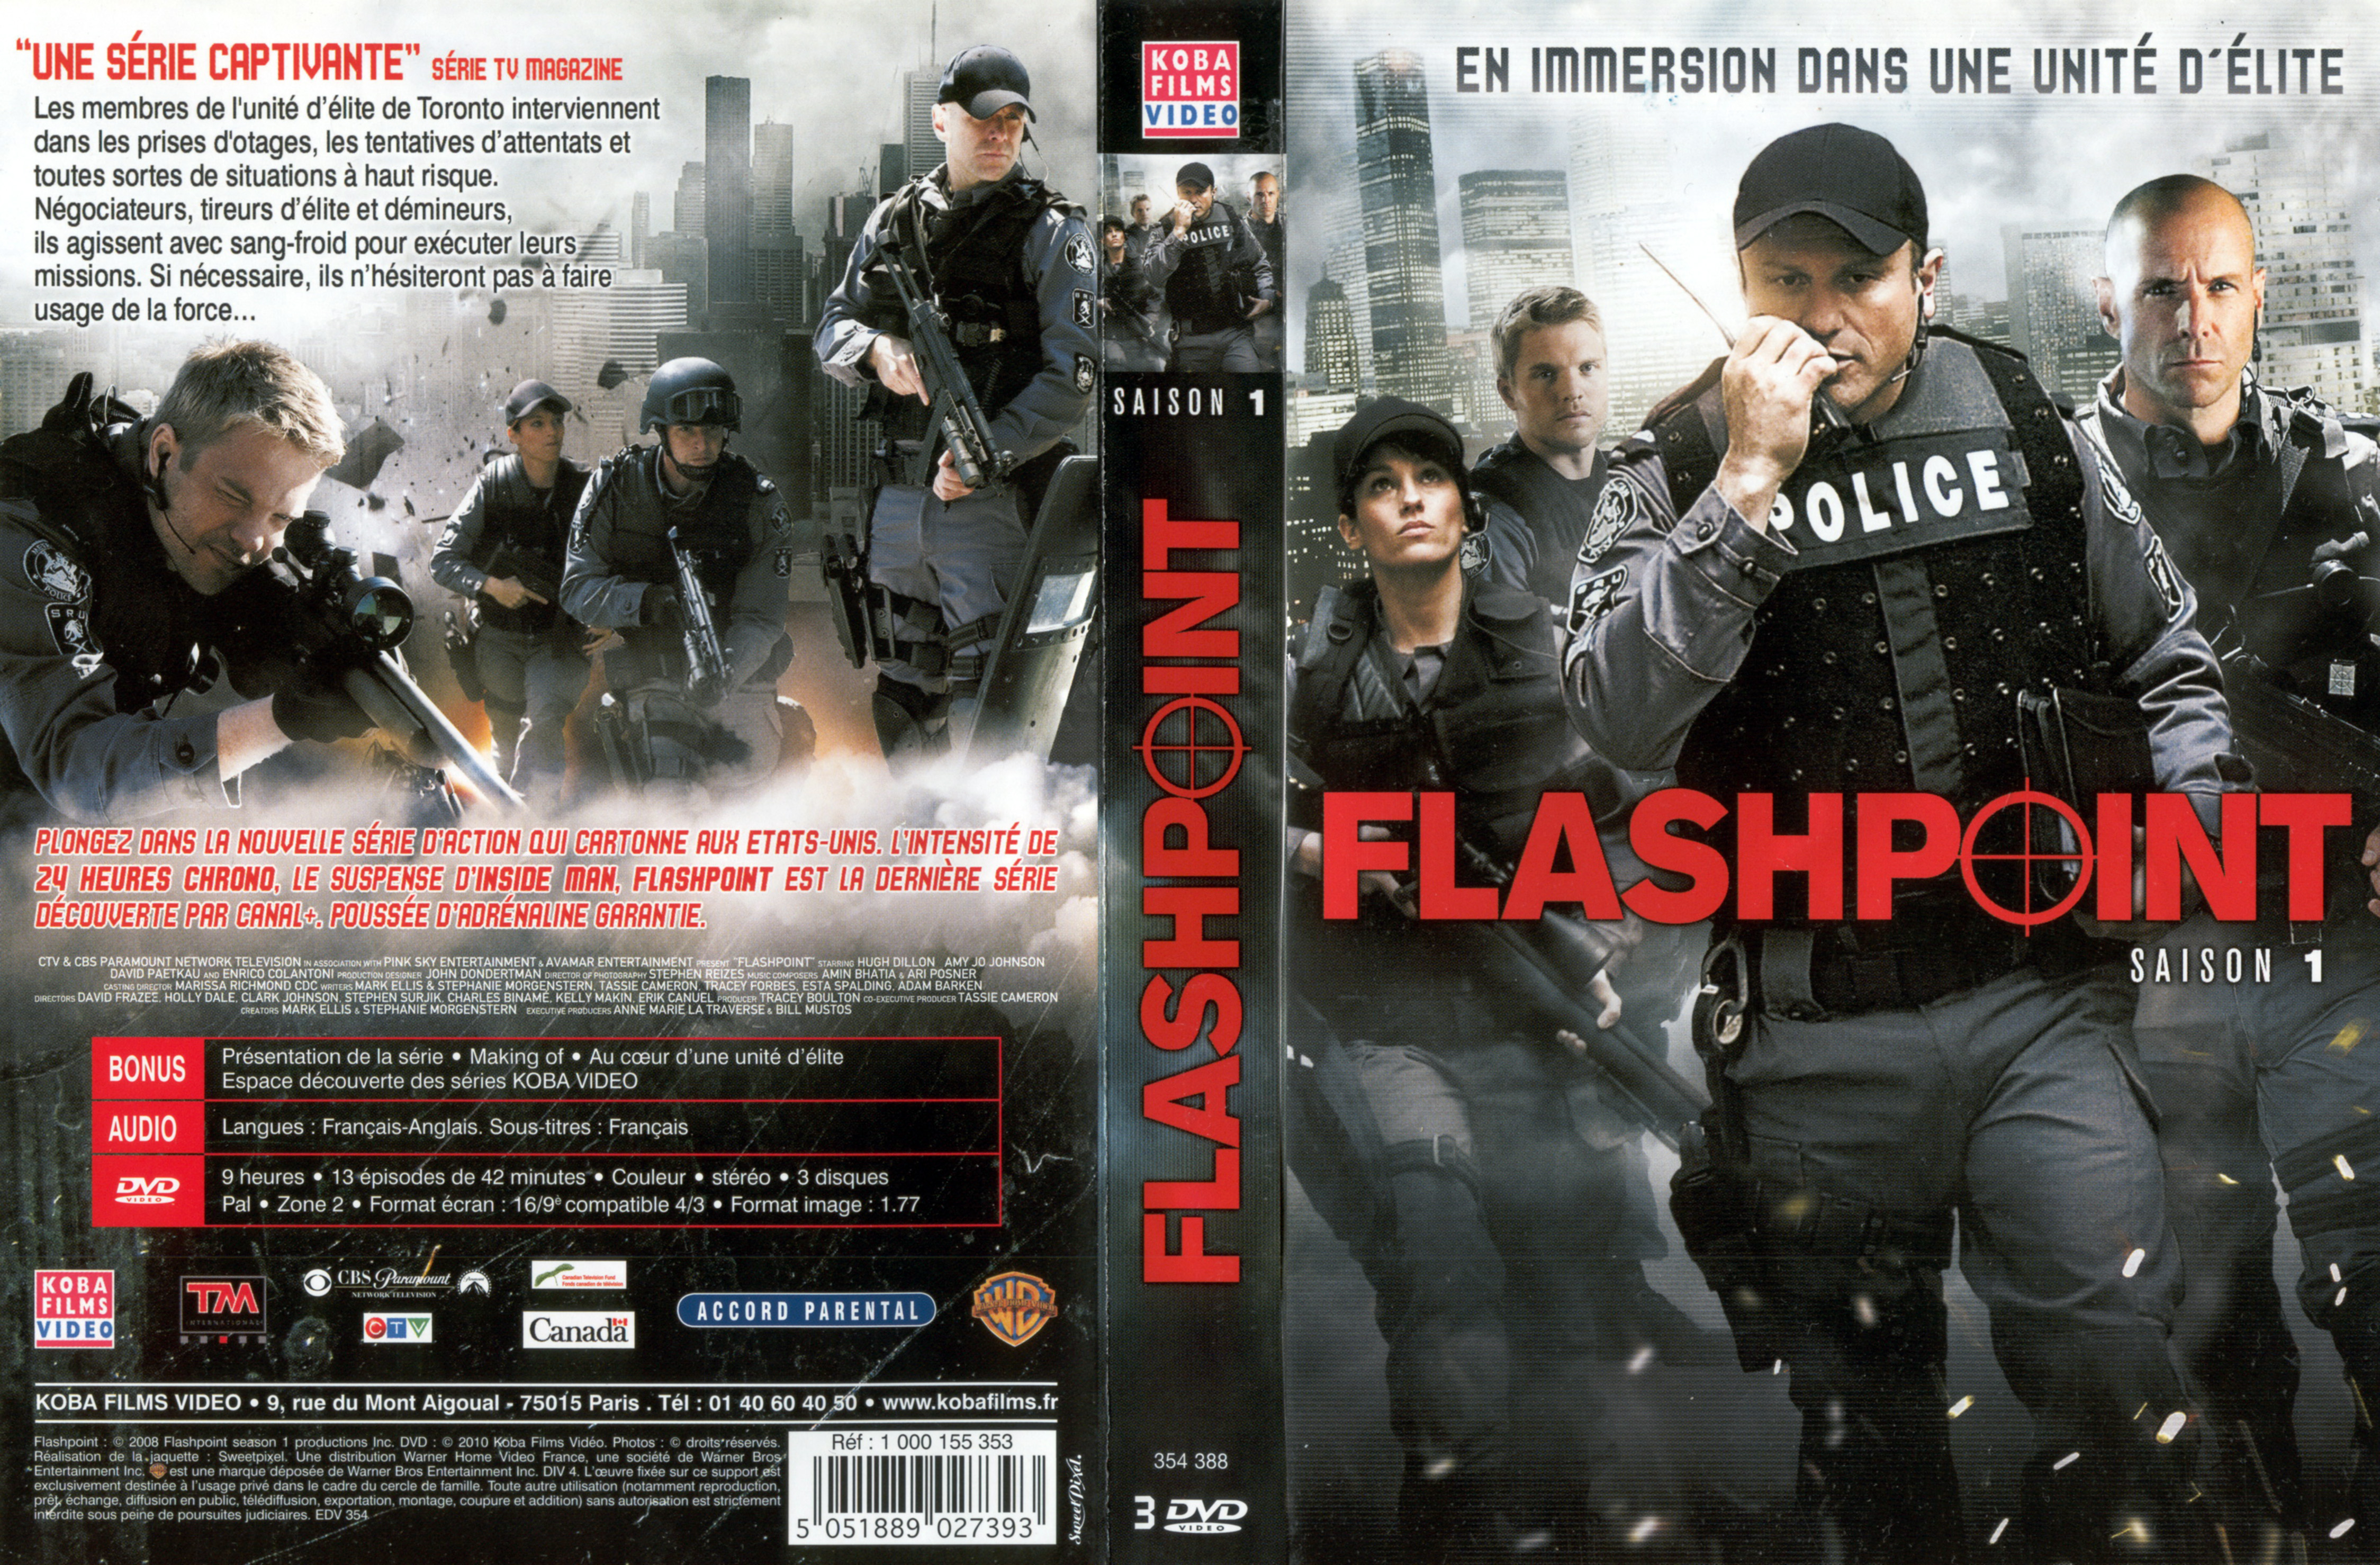 Jaquette DVD Flashpoint Saison 1 COFFRET